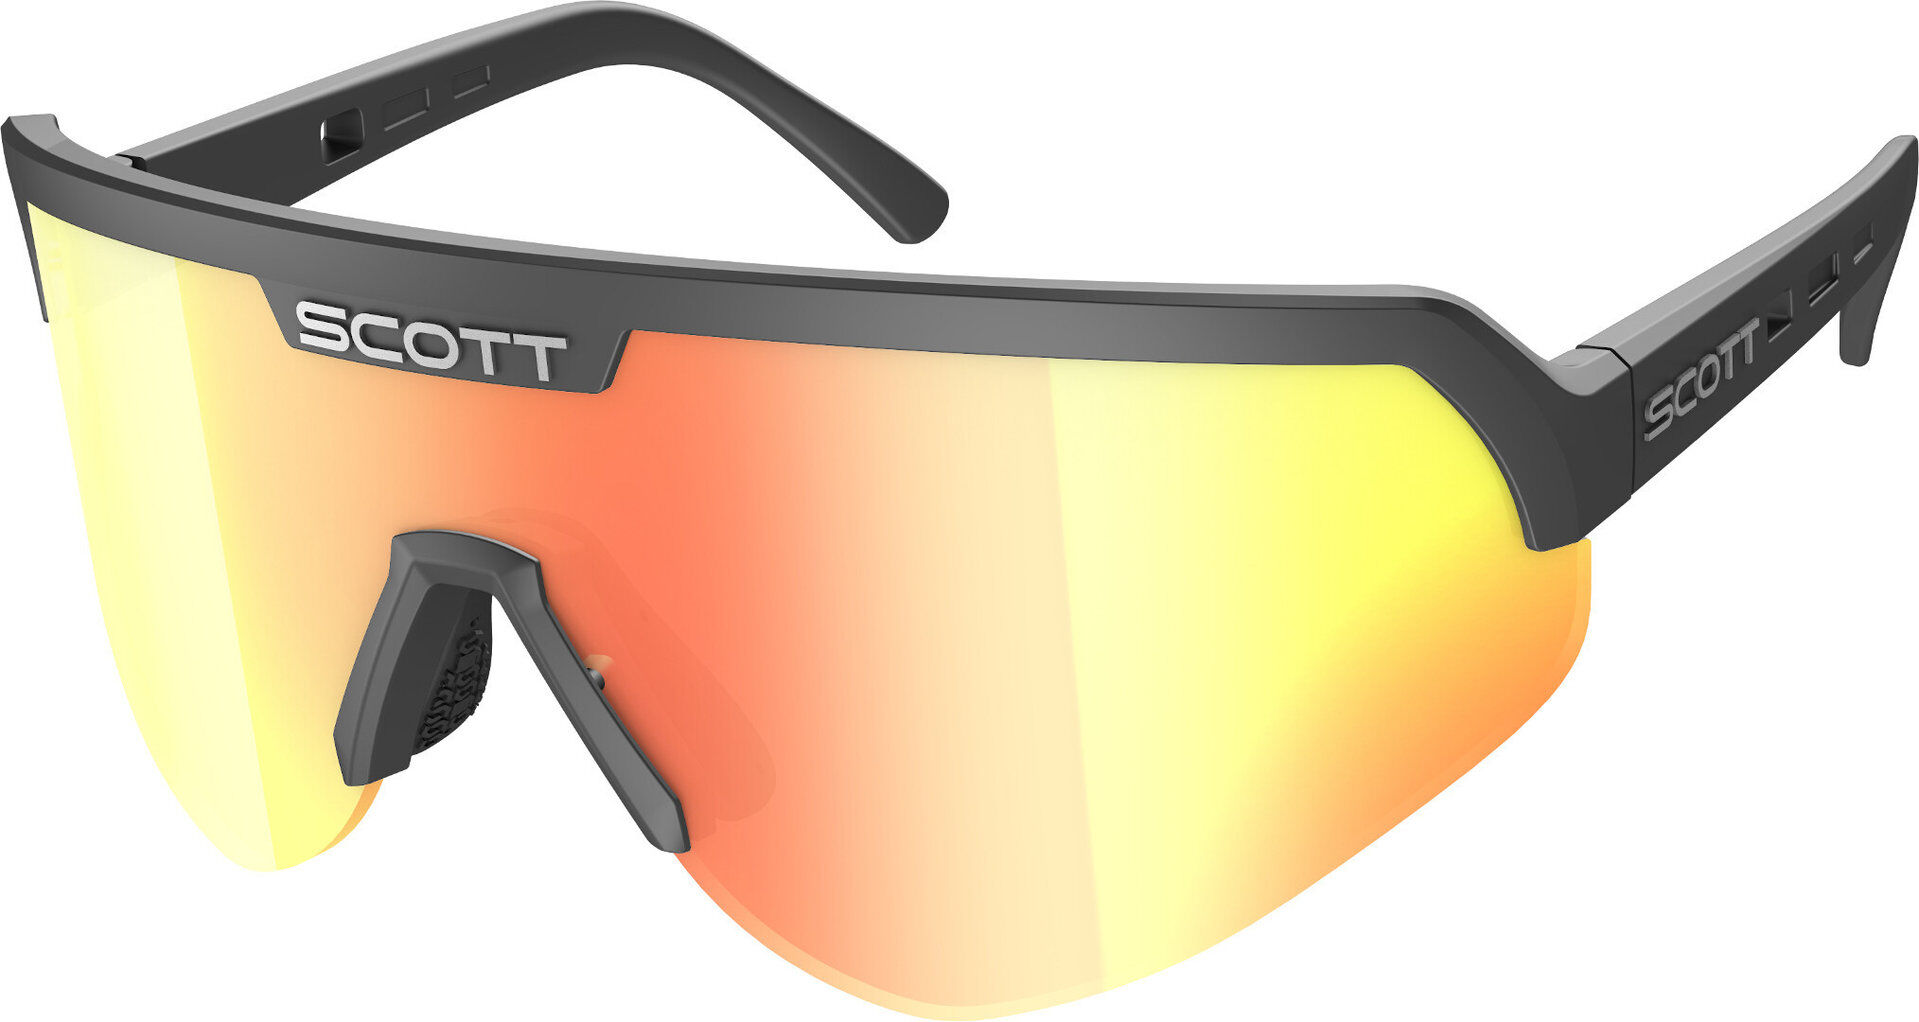 Scott Sport Shield Gafas de sol - Multicolor (un tamaño)